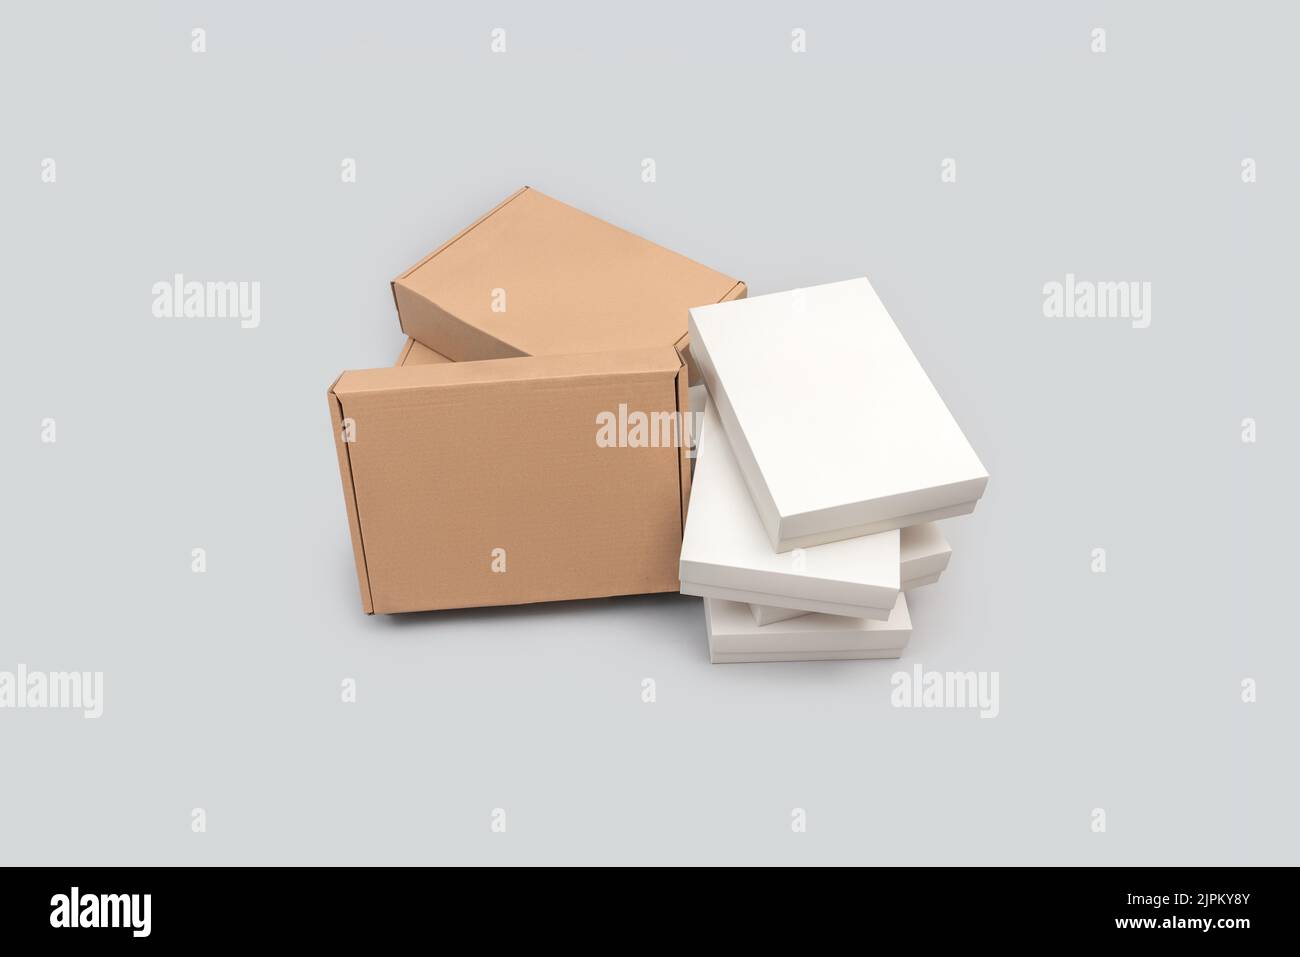 Weiße und braune Gruppe von Kartons isoliert auf weißem Hintergrund. E-Commerce- und Verpackungskonzept Stockfoto